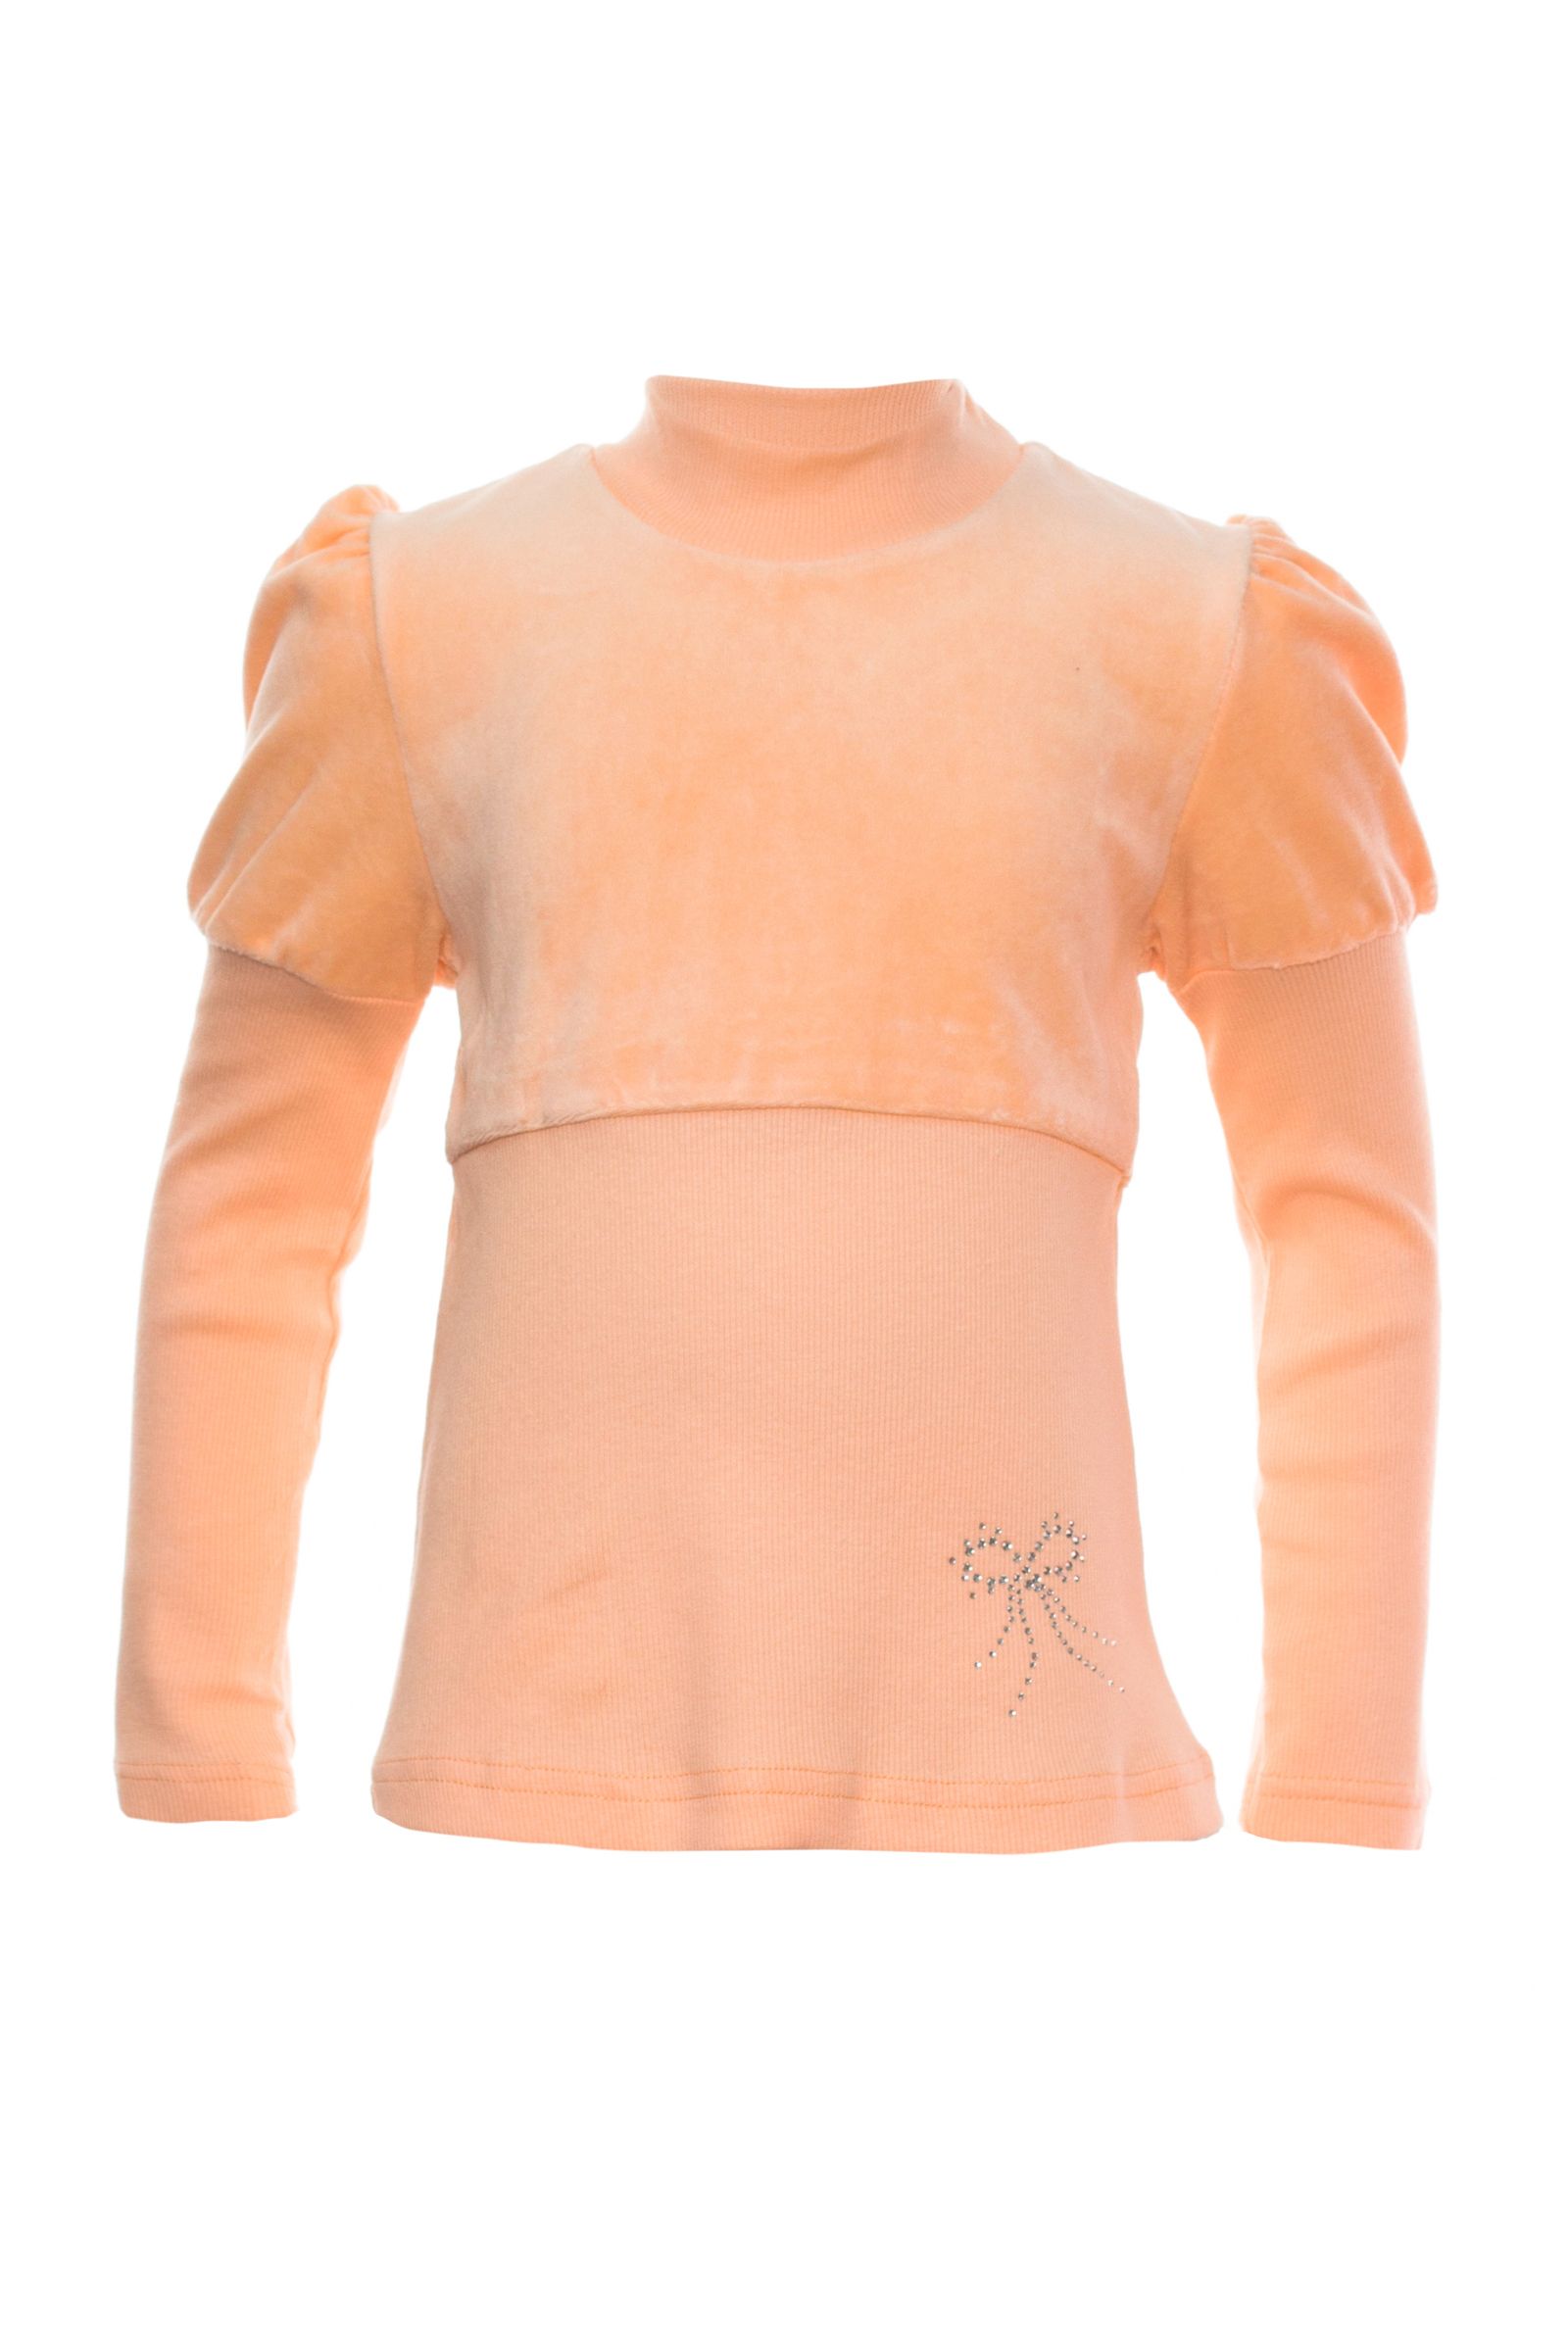 Джемпер-6-1084 оптом от производителя детской одежды 'Алёна'